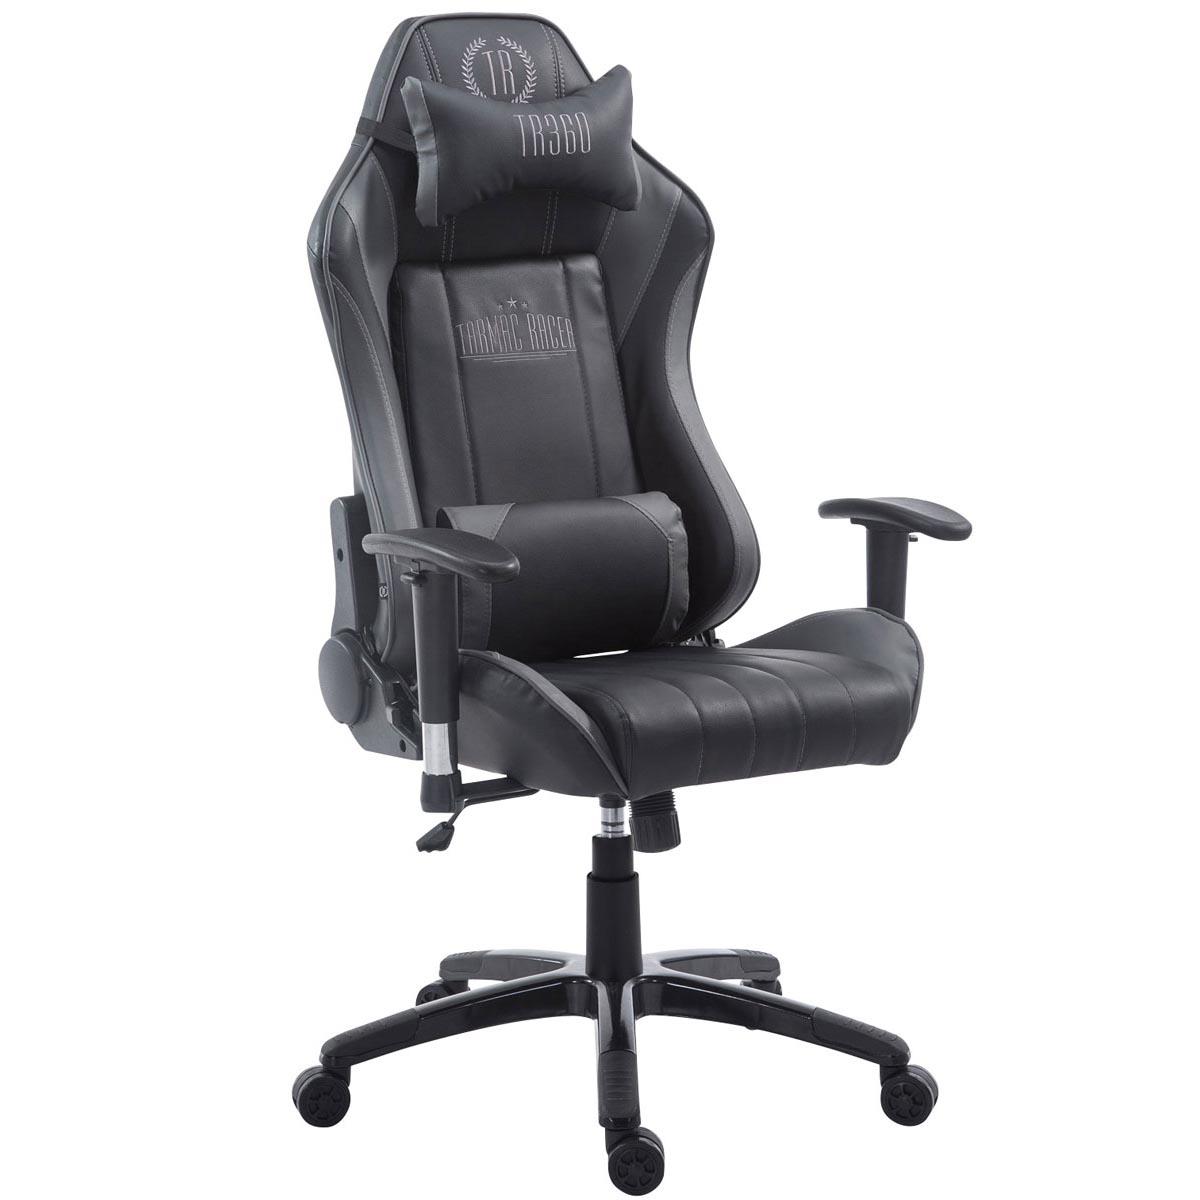 Gaming-Stuhl TURBO LEDER, neigbare Rückenlehne, Nacken- und Lordosekissen, Farbe Schwarz / Grau